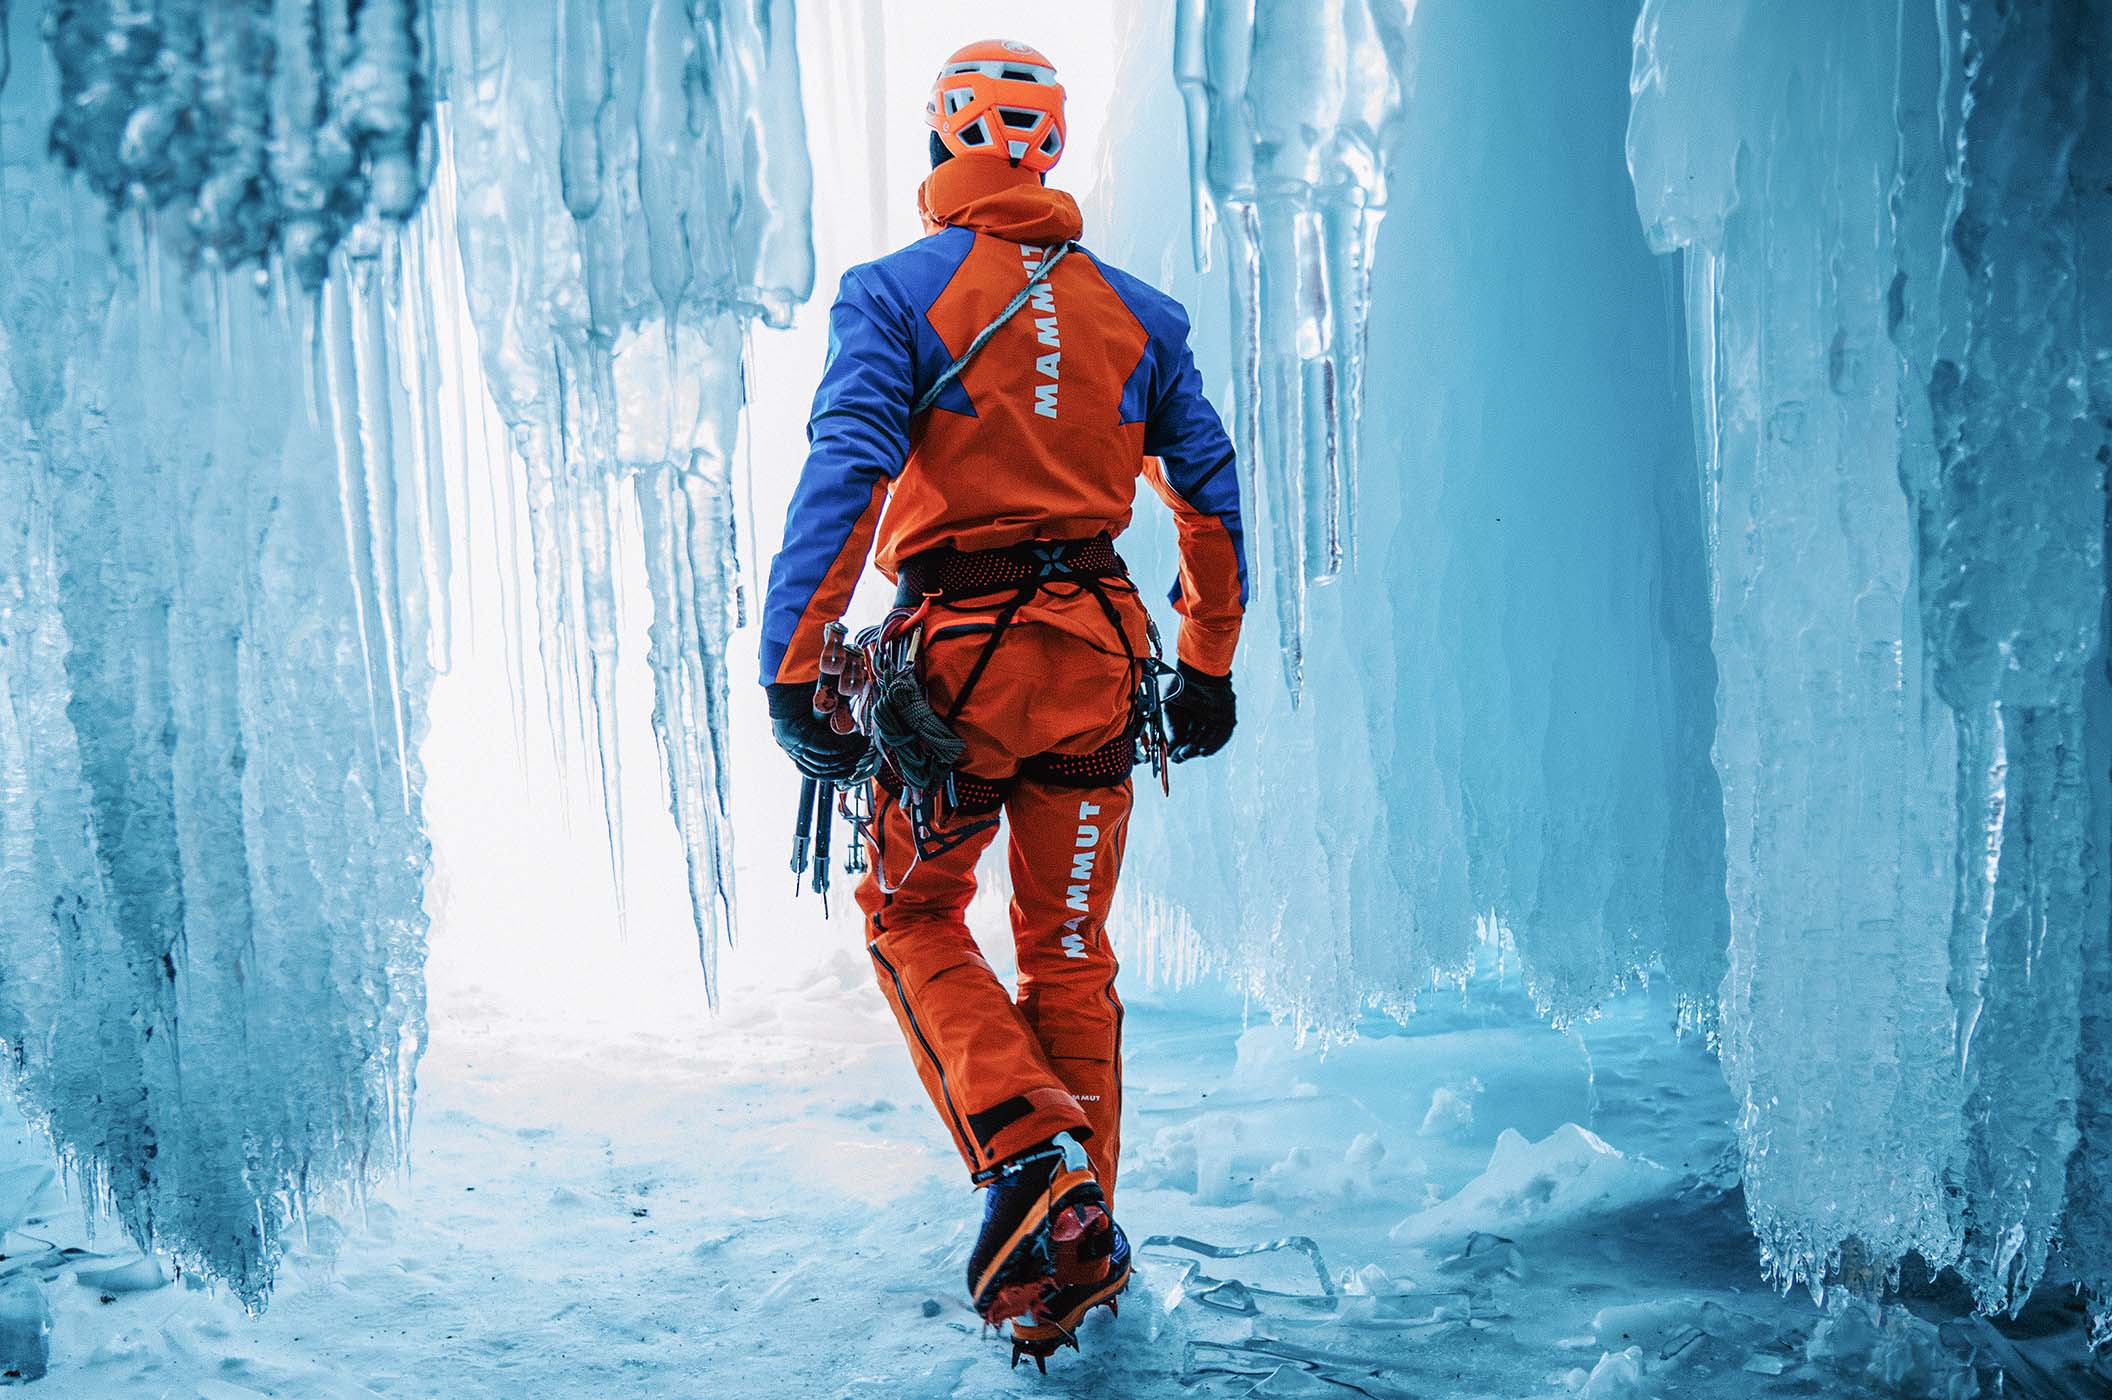 Mammut Eiger Extreme – Bergsportbekleidung und Ausrüstung für Profi-Outdoorsportler